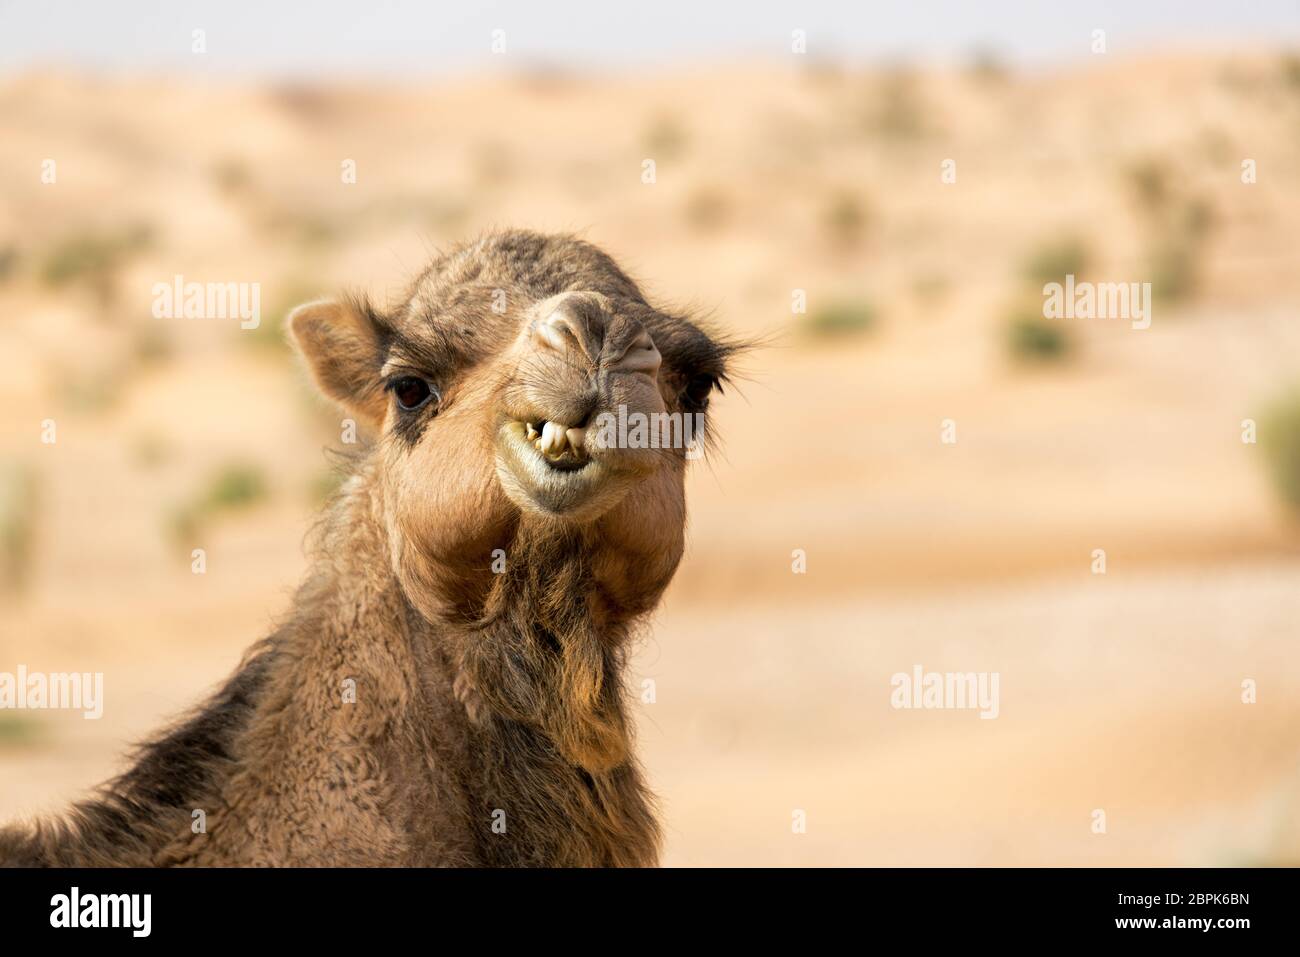 Closeup view of a camel making a funny face in the Sahara Desert near Douz, Tunisia Stock Photo